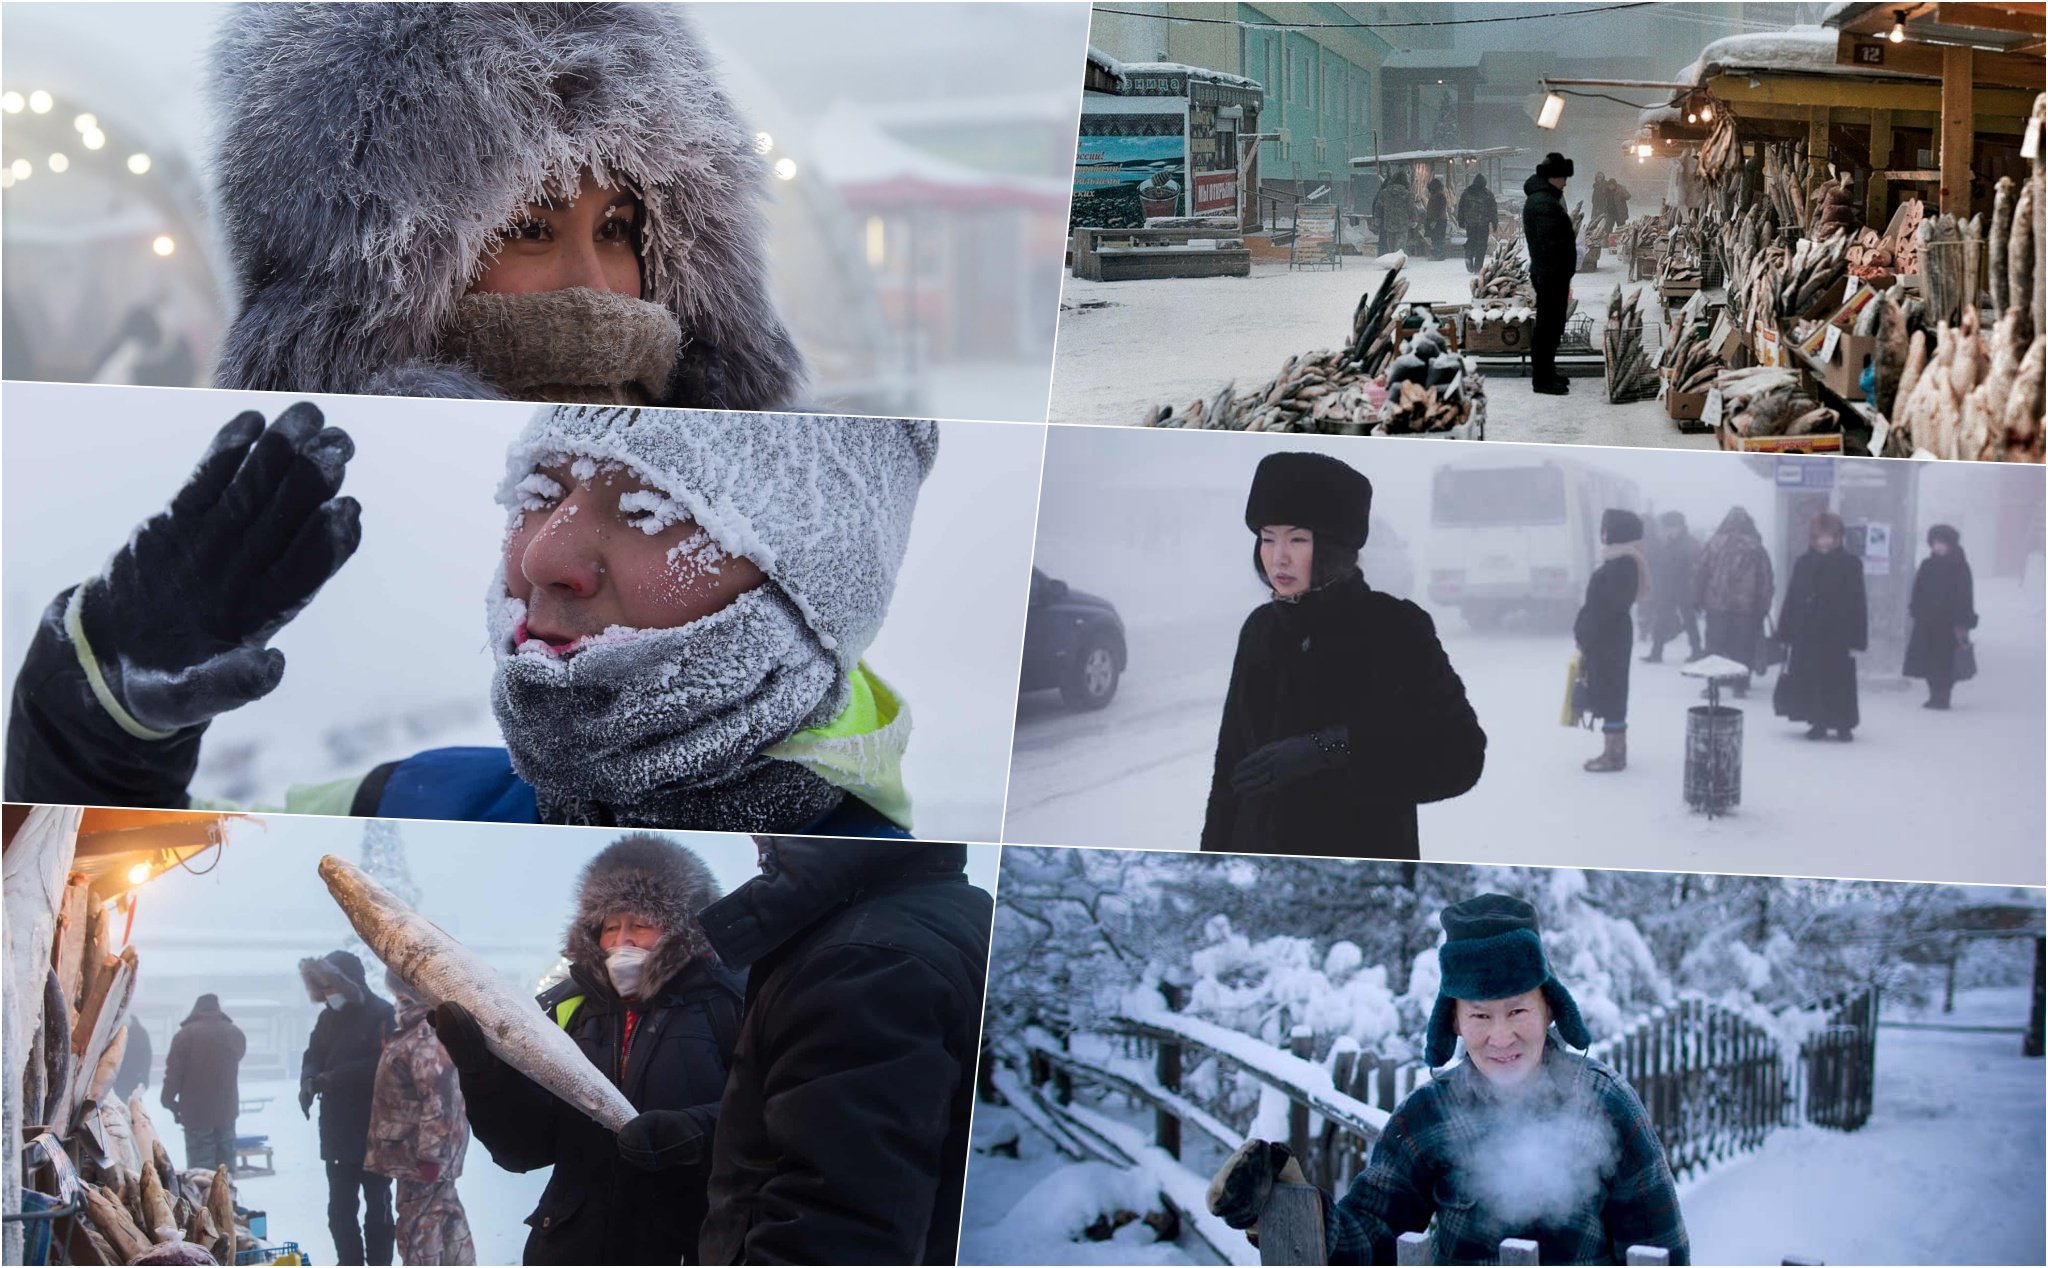 Ký sự ảnh: Mùa đông tại thành phố lạnh giá nhất thế giới